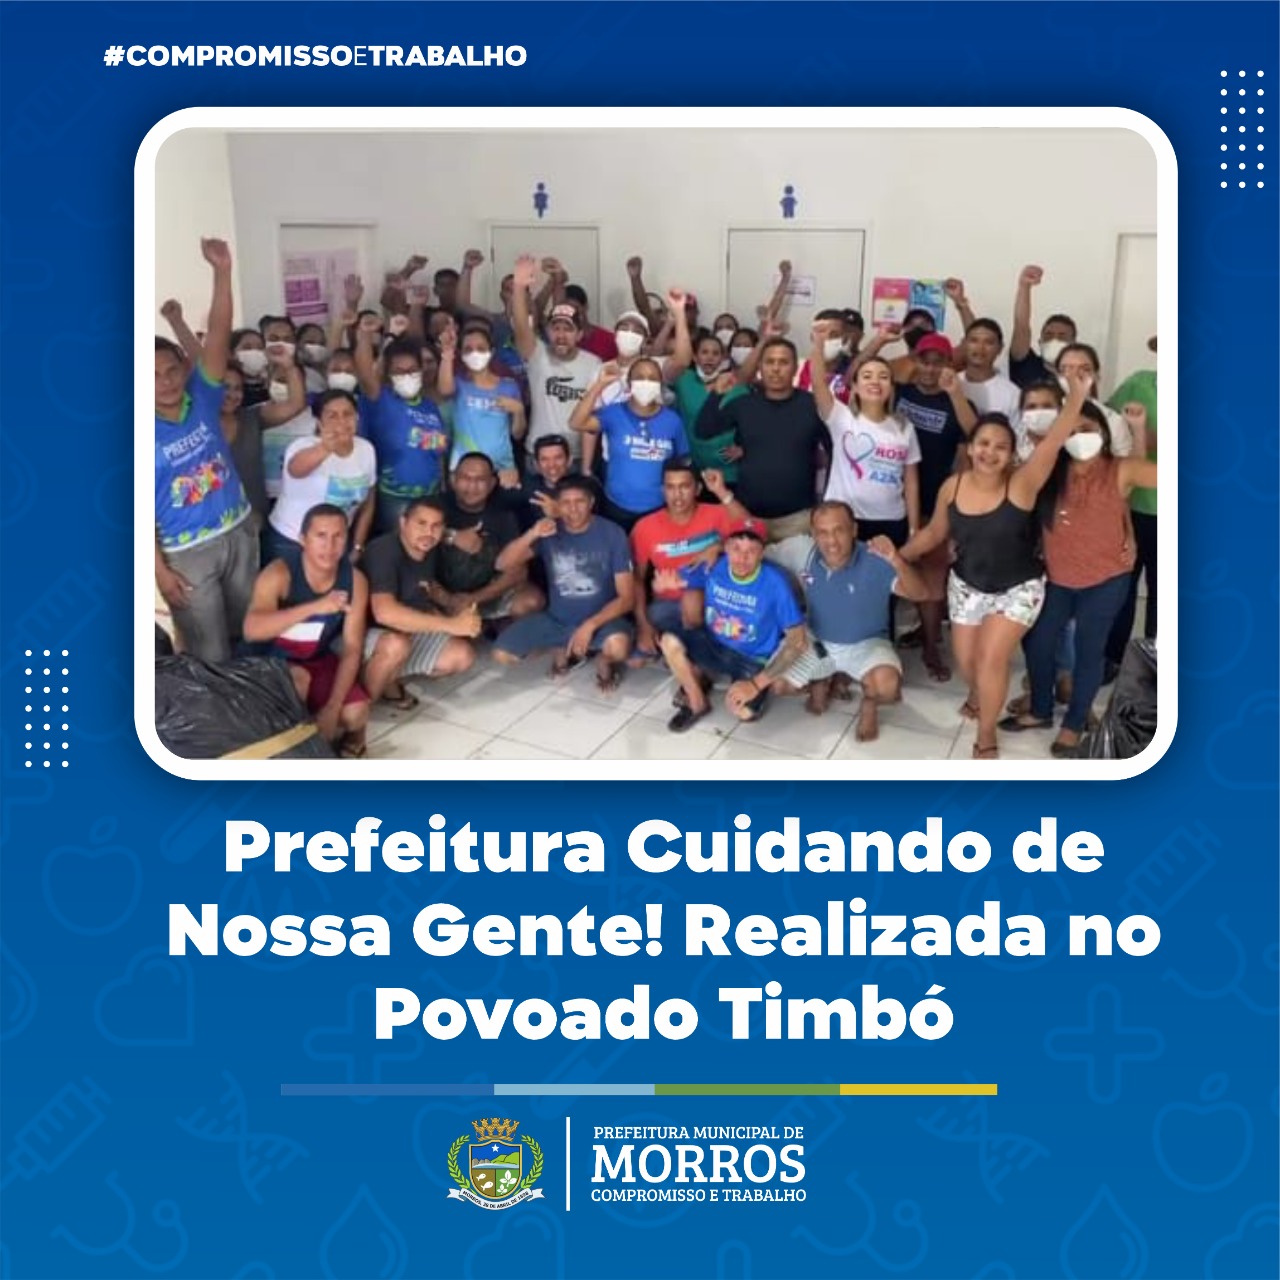 É com muita alegria que chegamos ao Povoado Timbó para mais uma Ação Social promovida pela Prefeitura de Morros